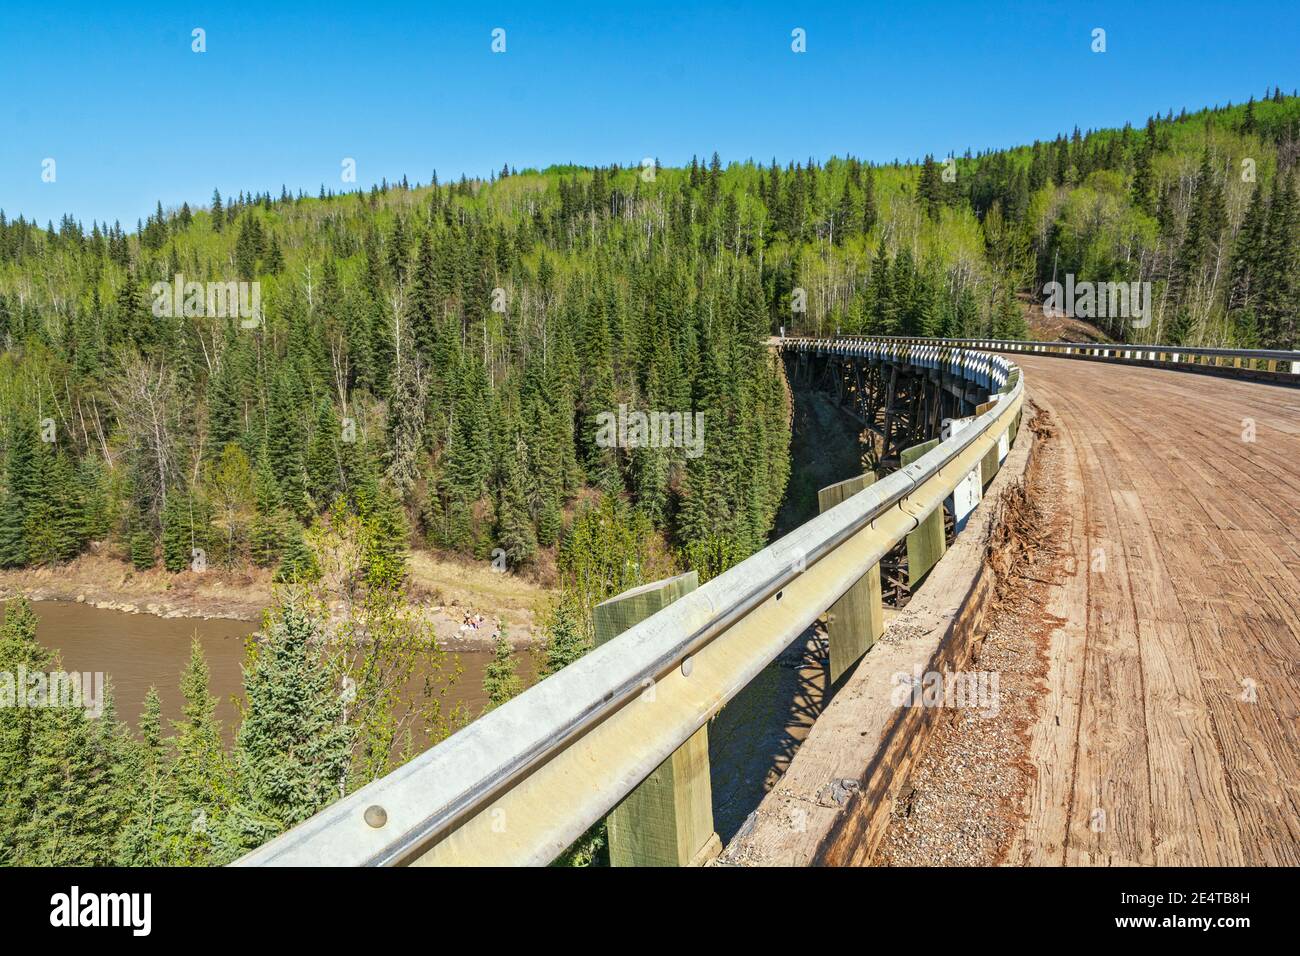 Canada, Colombie-Britannique, Old Alaska Highway, pont courbe Kiskatinaw construit en 1942-43 au point milliaire 21 Banque D'Images